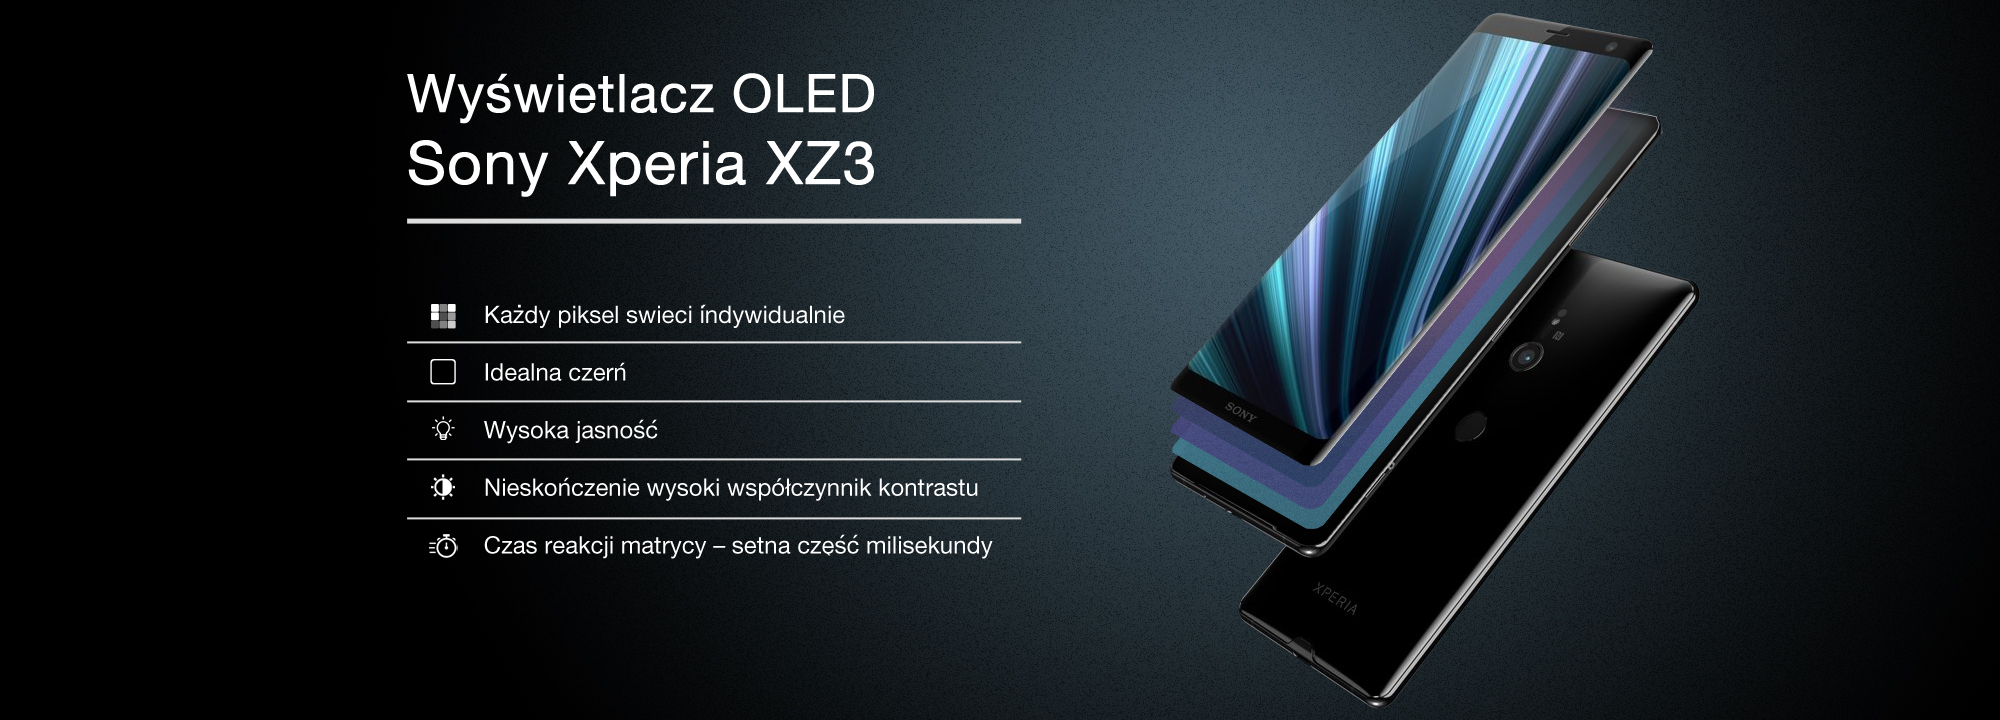 OLED - nowa jakość obrazu w Xperia XZ3